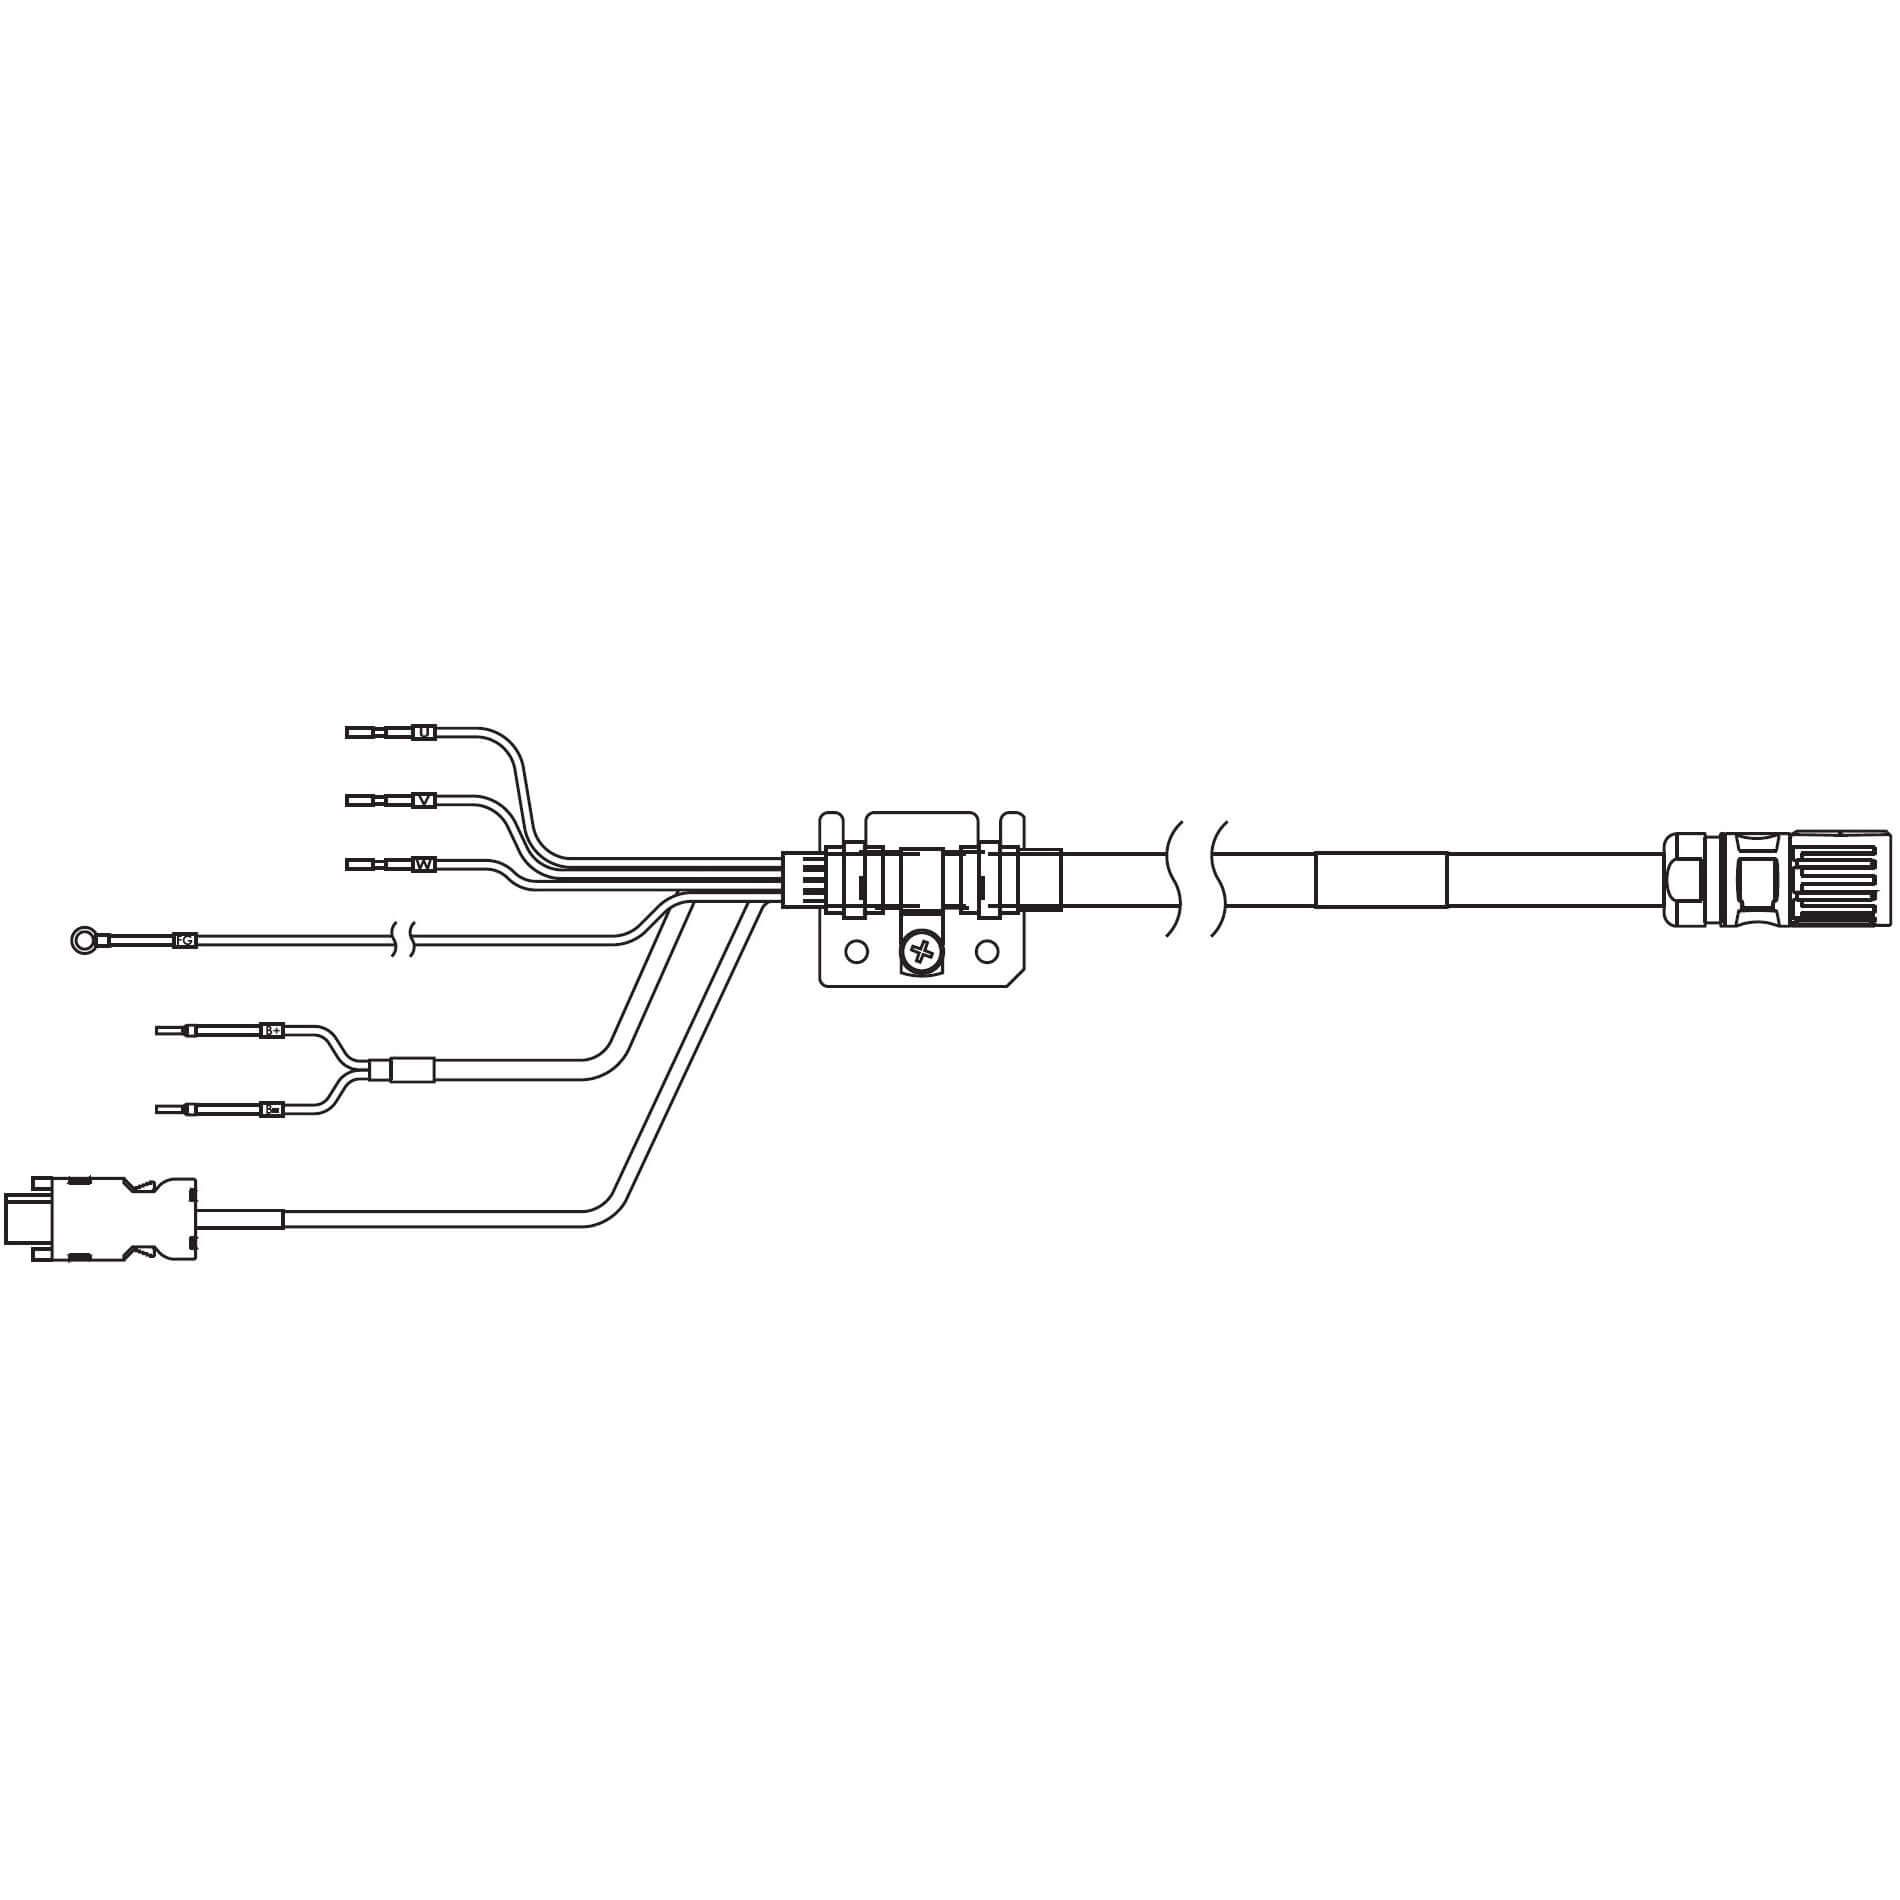 1S-Servomotor mit Safe Motion, Integrierte Kabel R88A-CX1C015SF